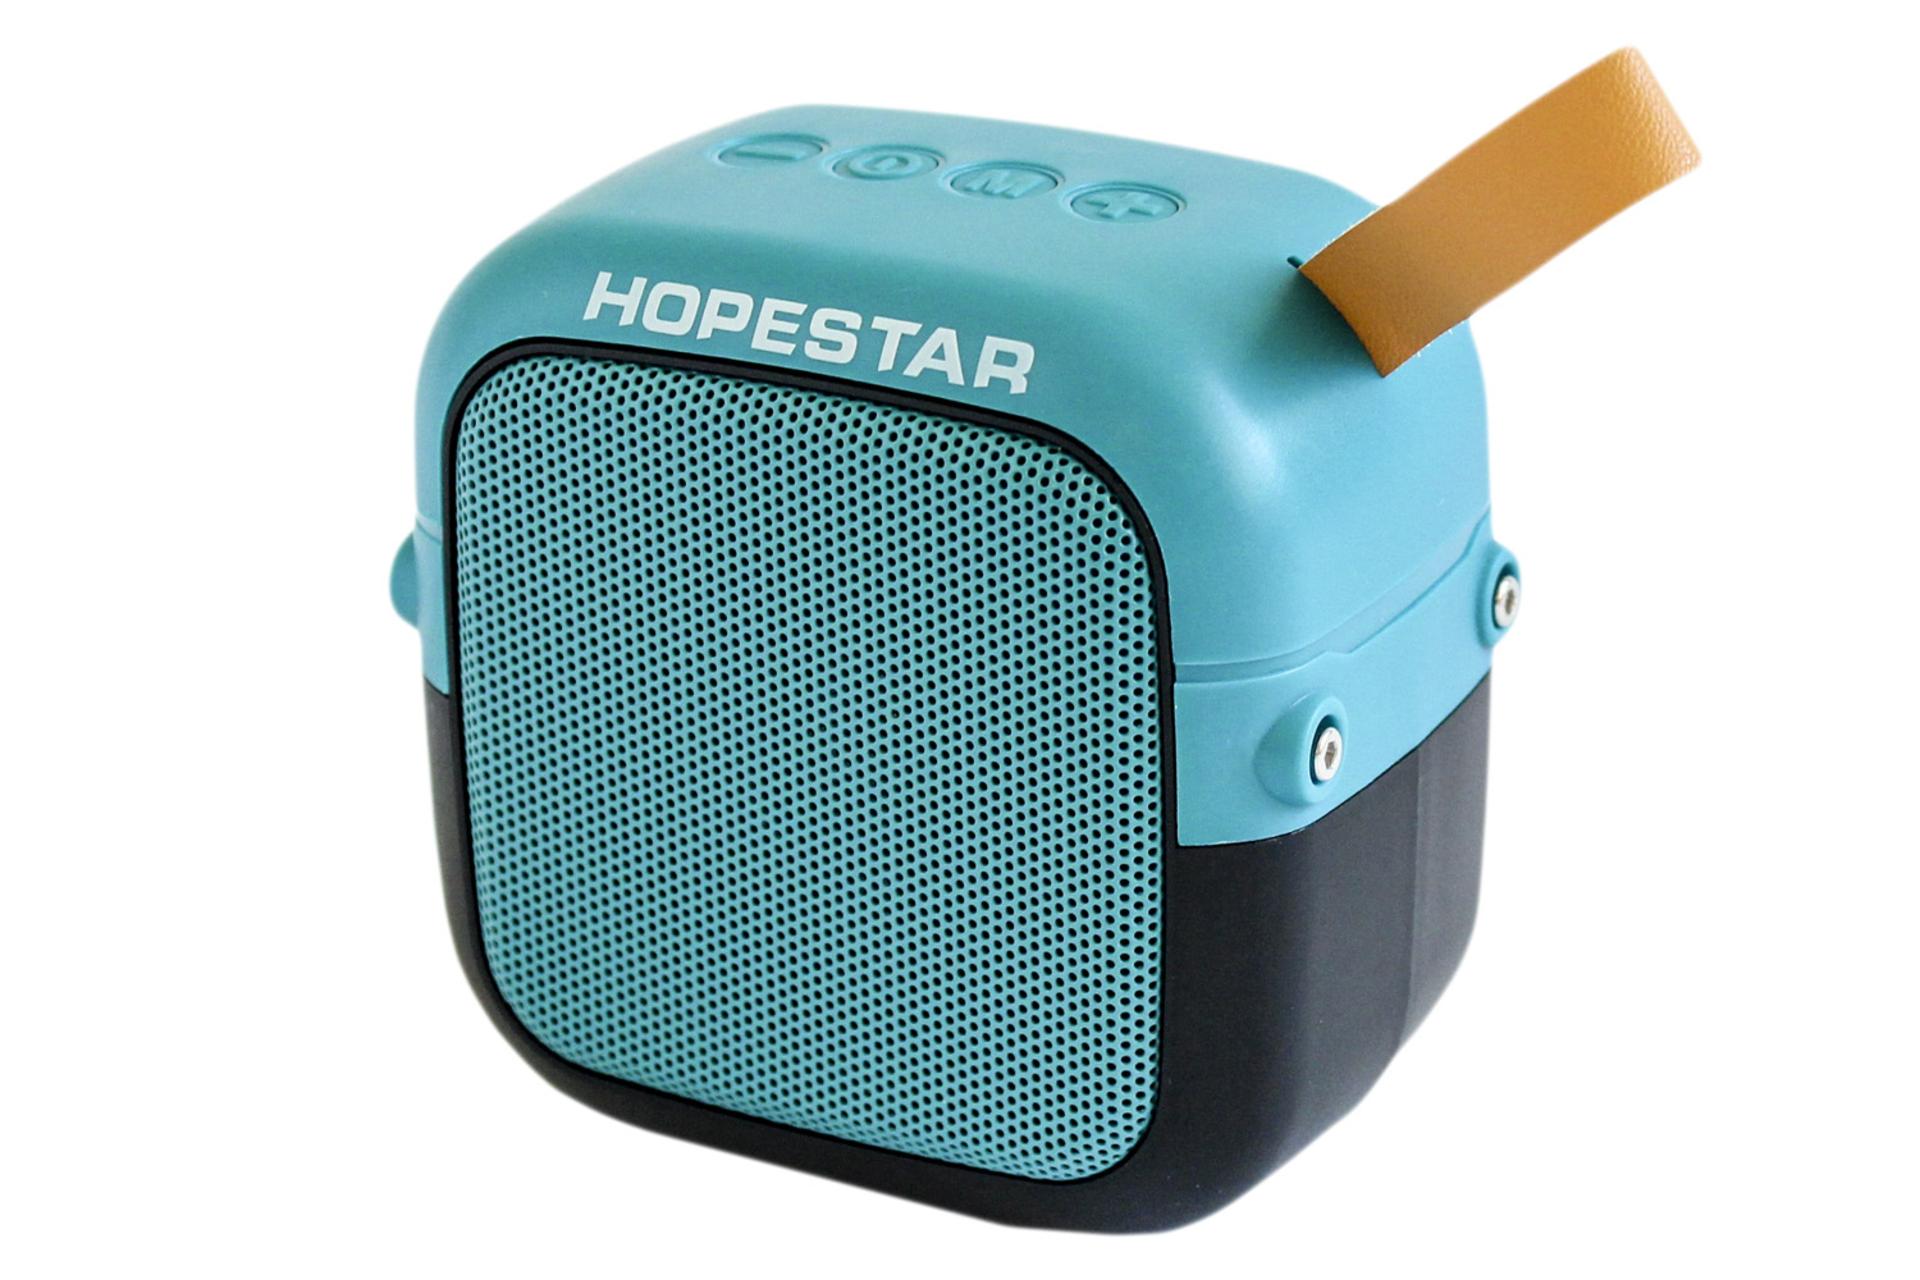 اسپیکر هوپ استار Hopestar T5 Mini آبی